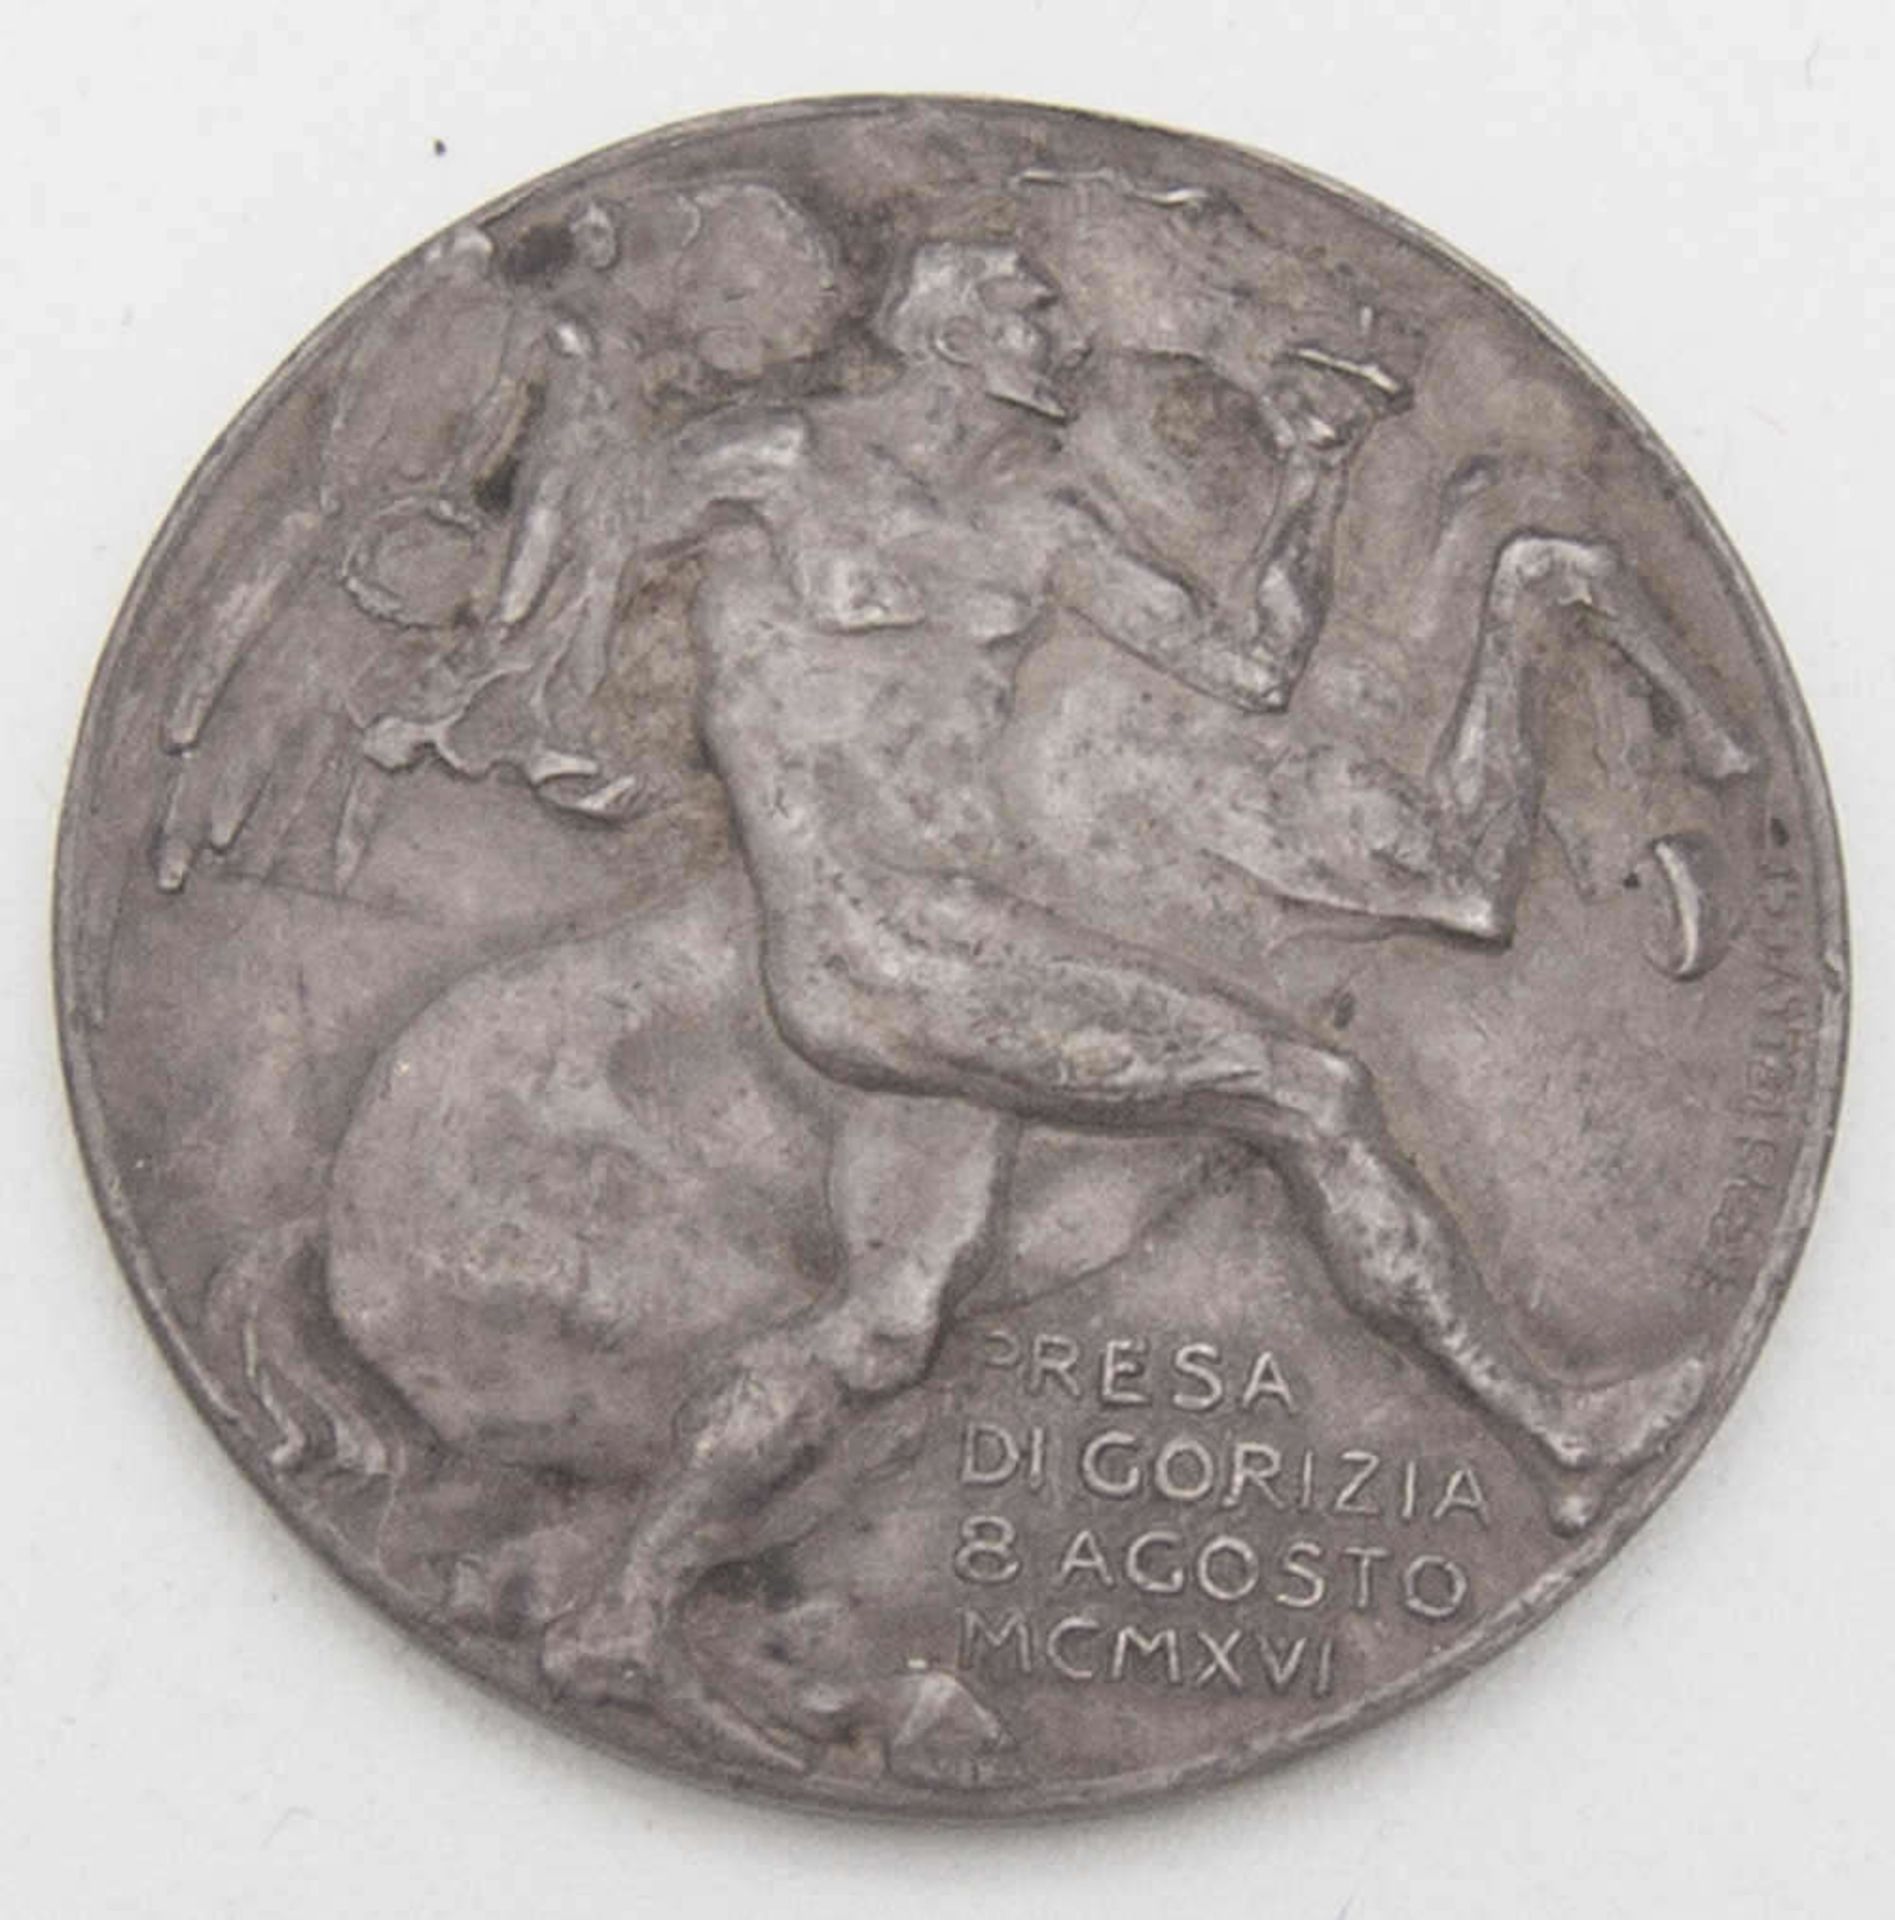 Italien 1916, Medaille von B. Castellucci zur Einnahme von Gorizia am 8. August. Zwölf Zeilen